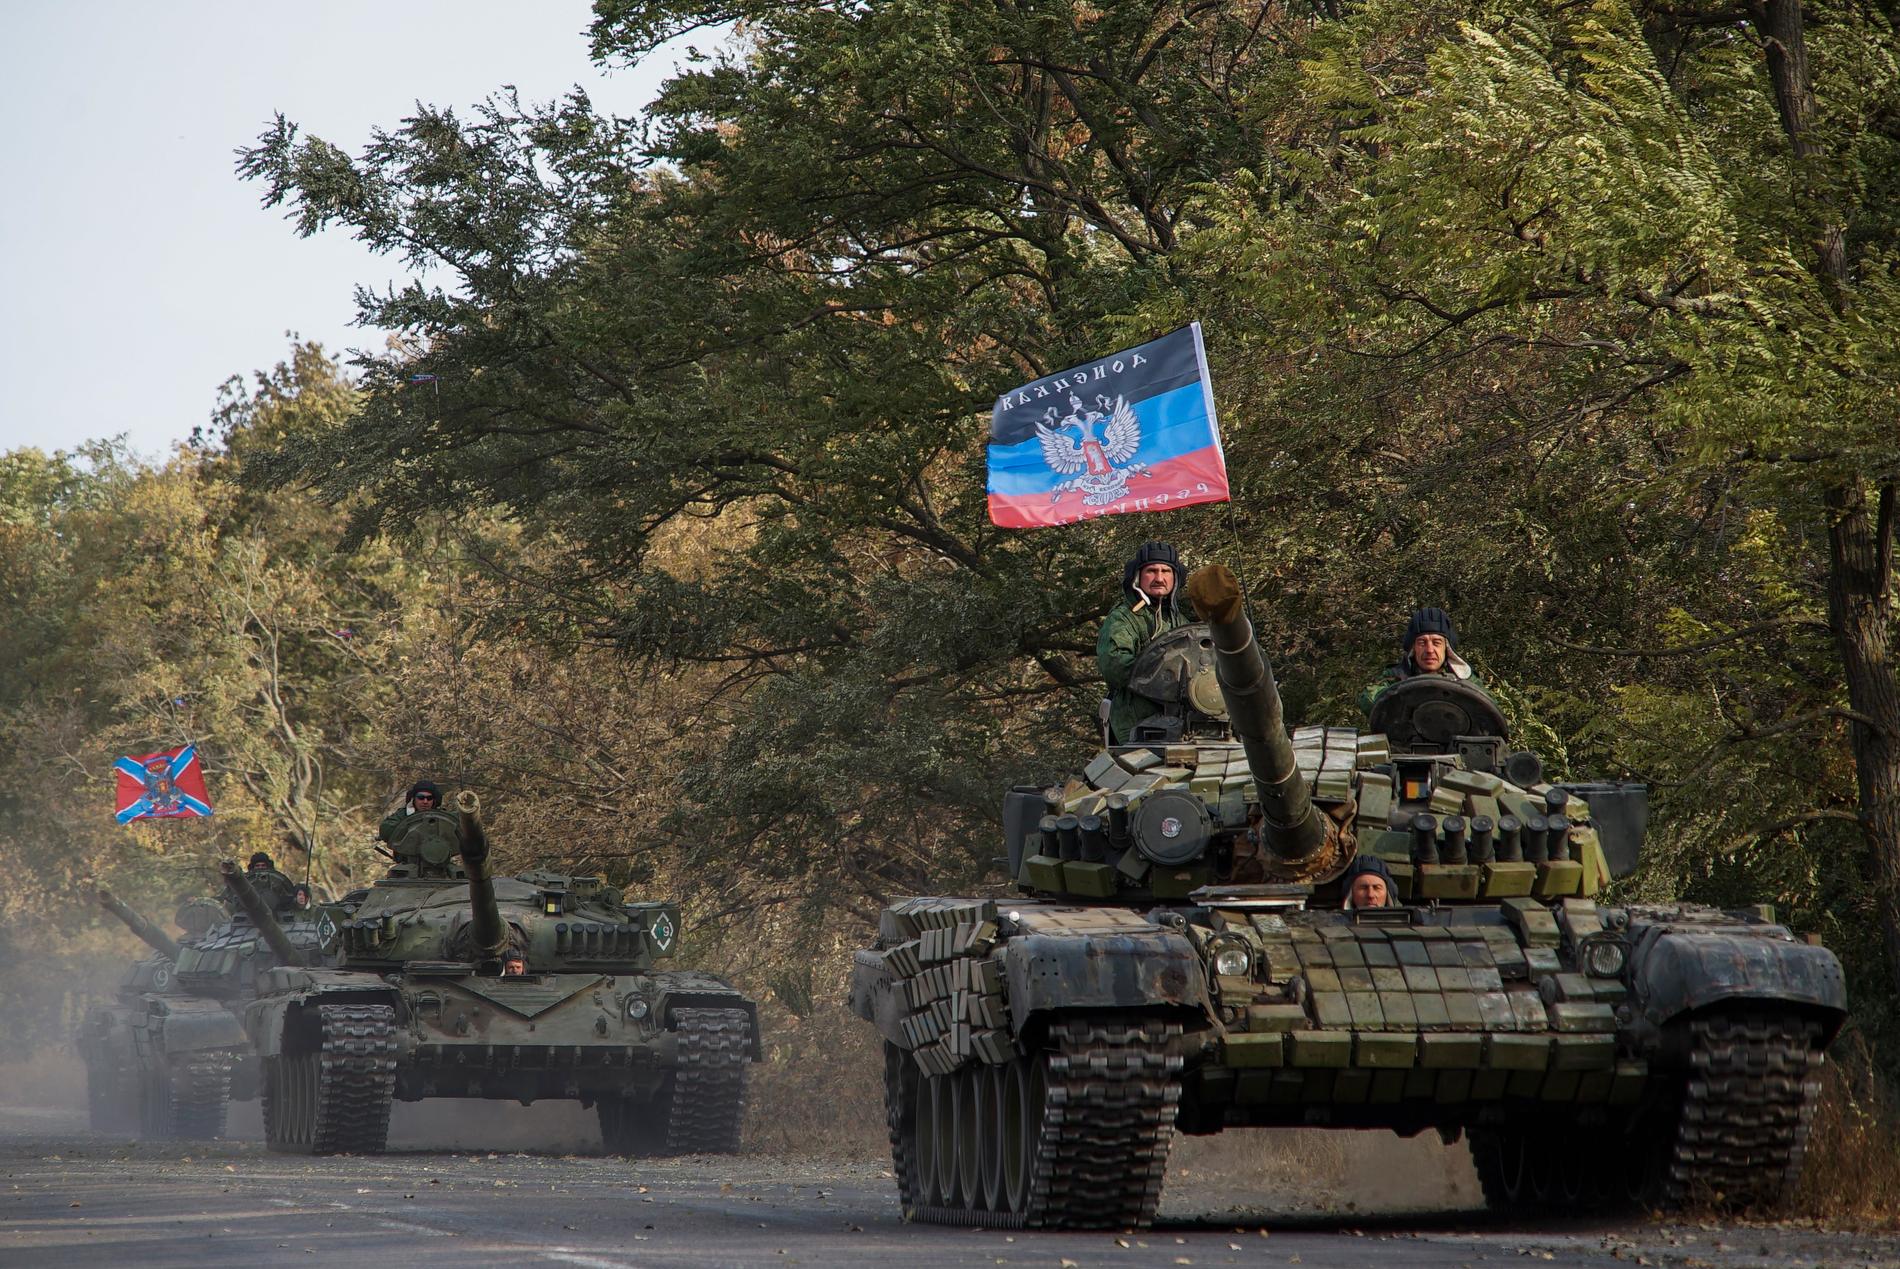 Proryska separatister på en arkivbild från 2015.